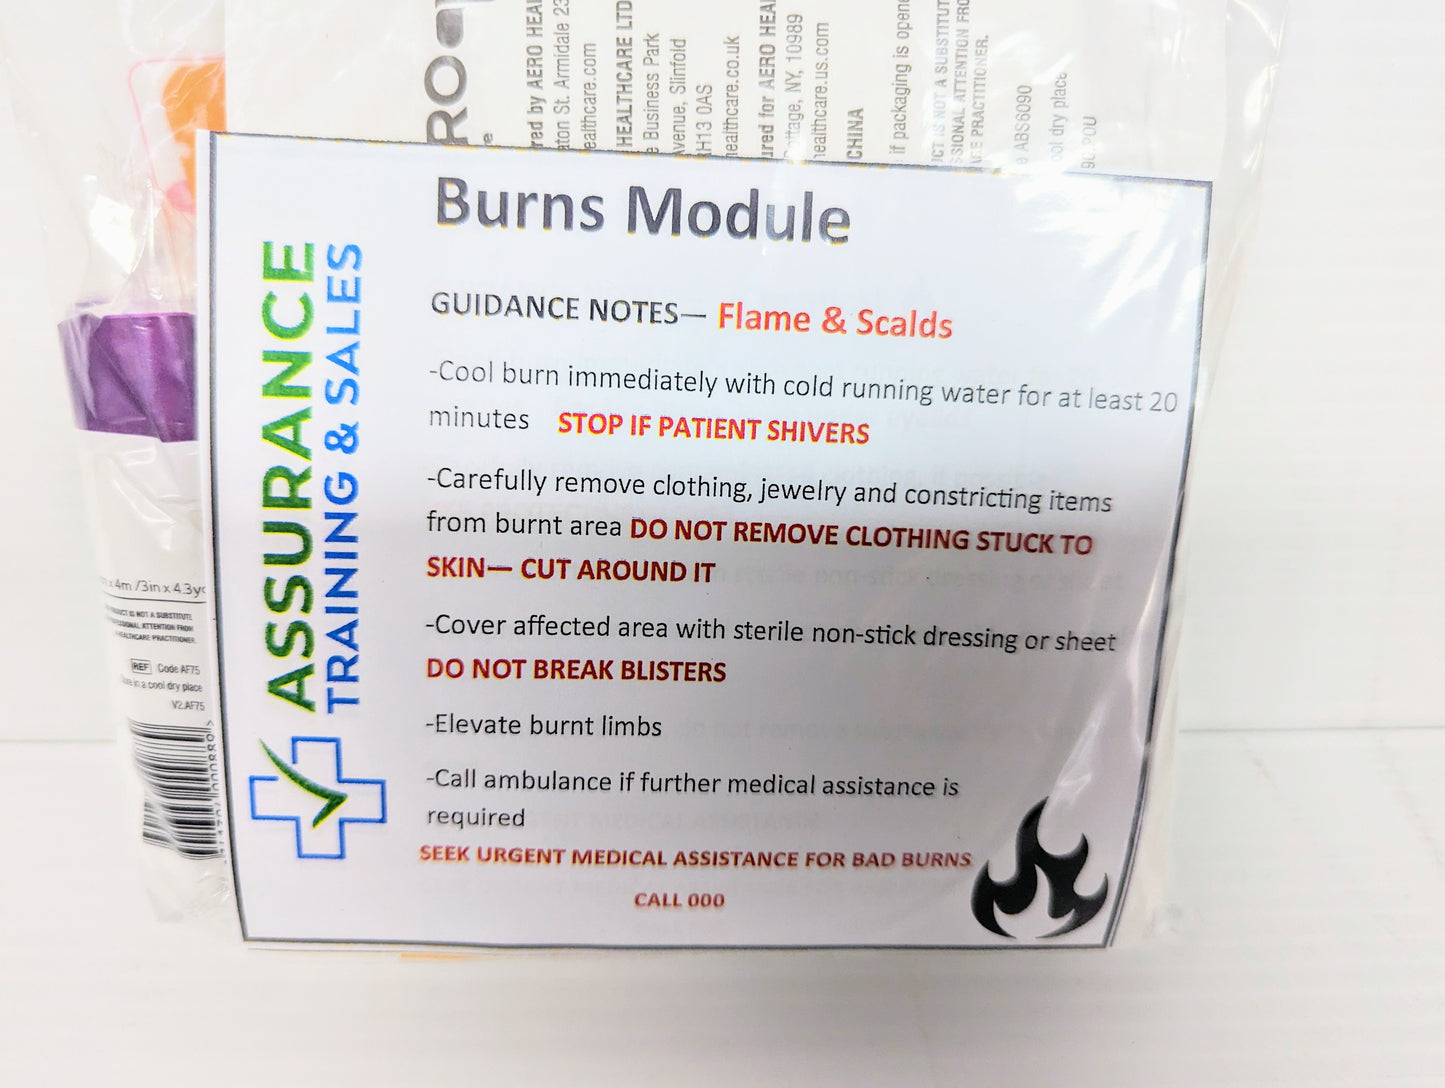 ATS burns module